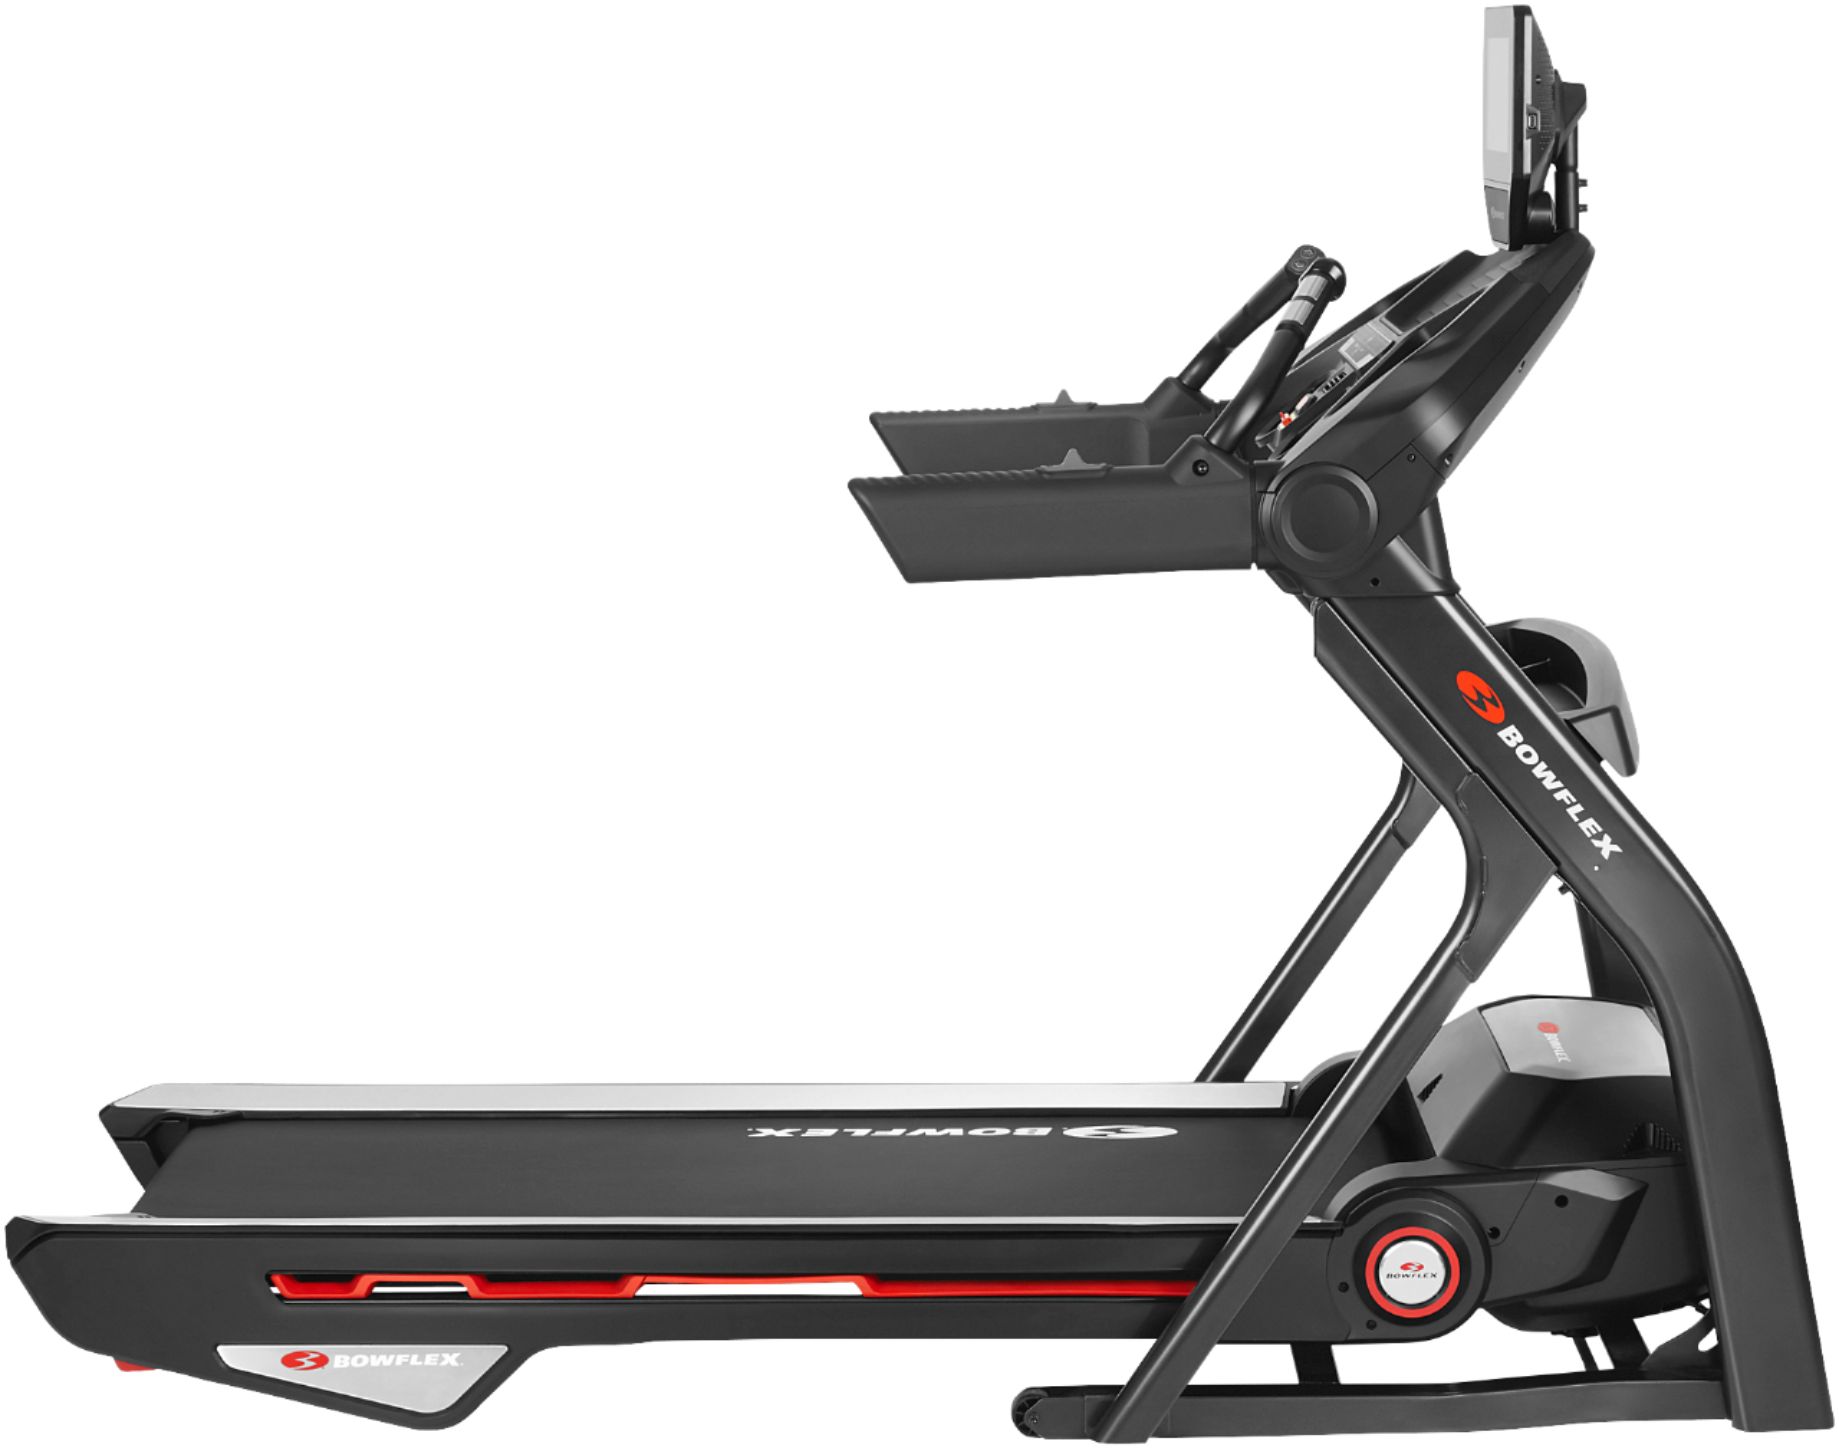 Bowflex Treadmill 10 – Black – Just $1299.99 at Best Buy